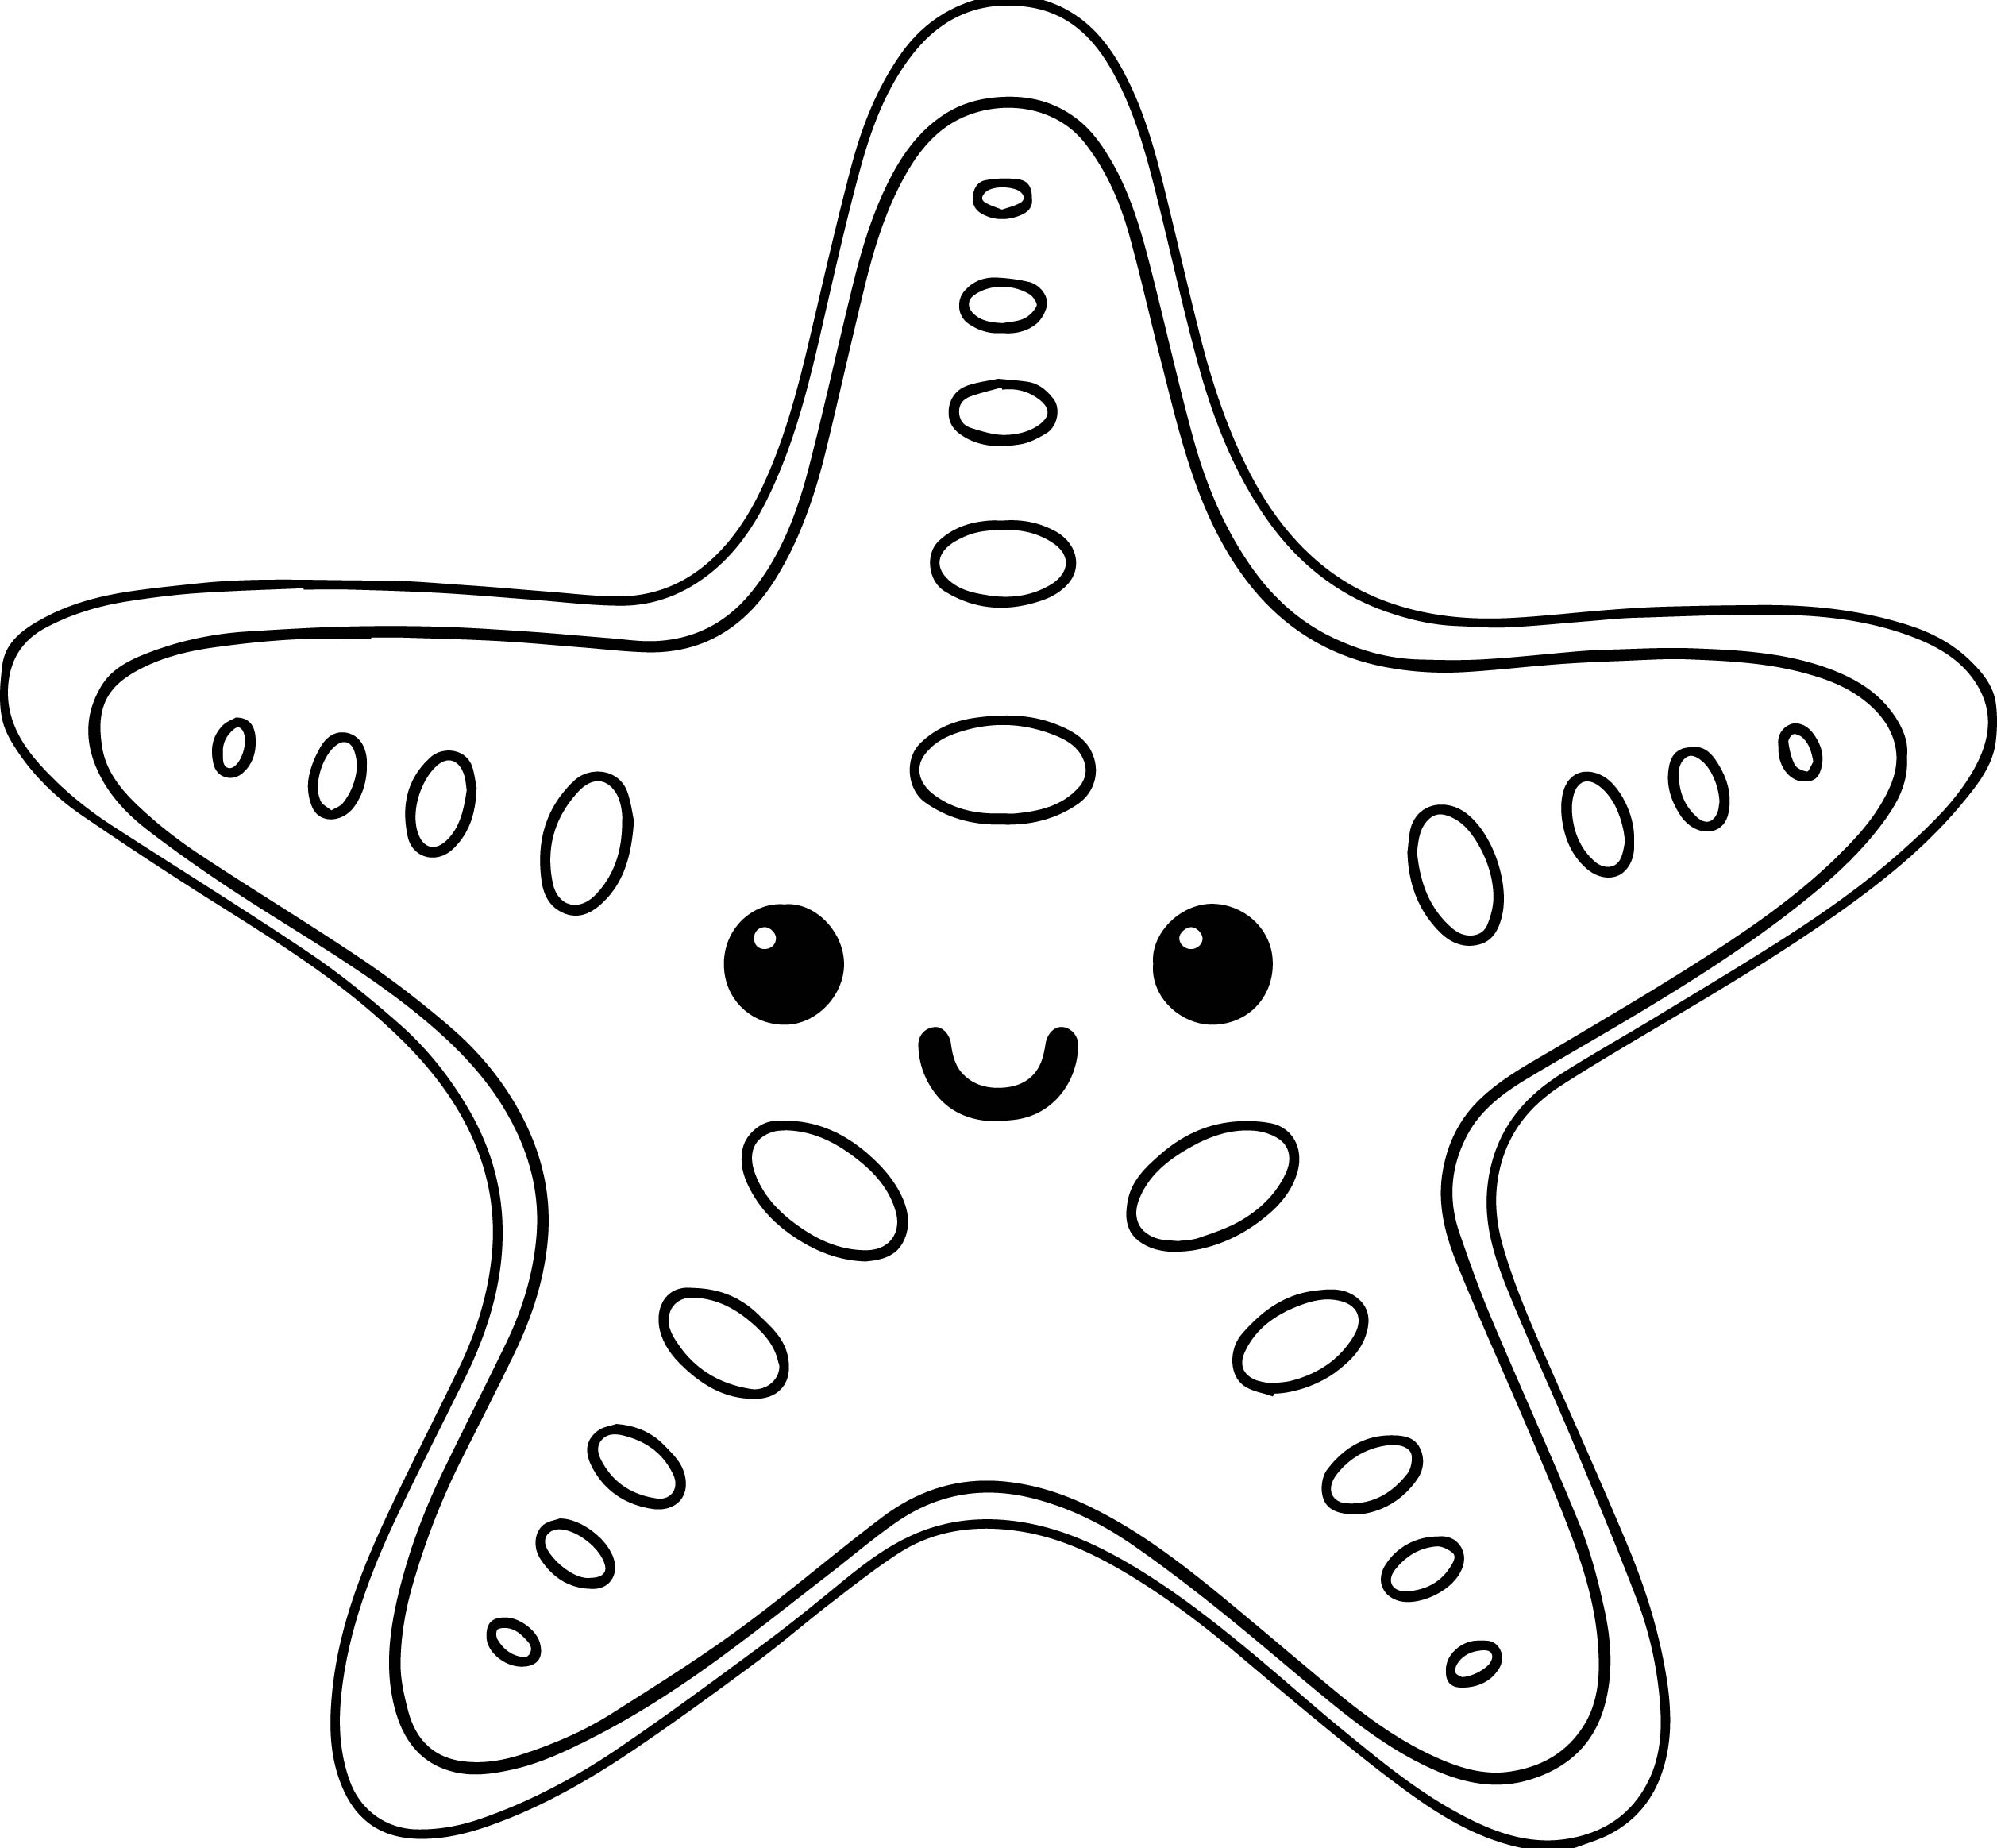 starfish coloring sheet starfish drawing for kids at getdrawingscom free for starfish coloring sheet 